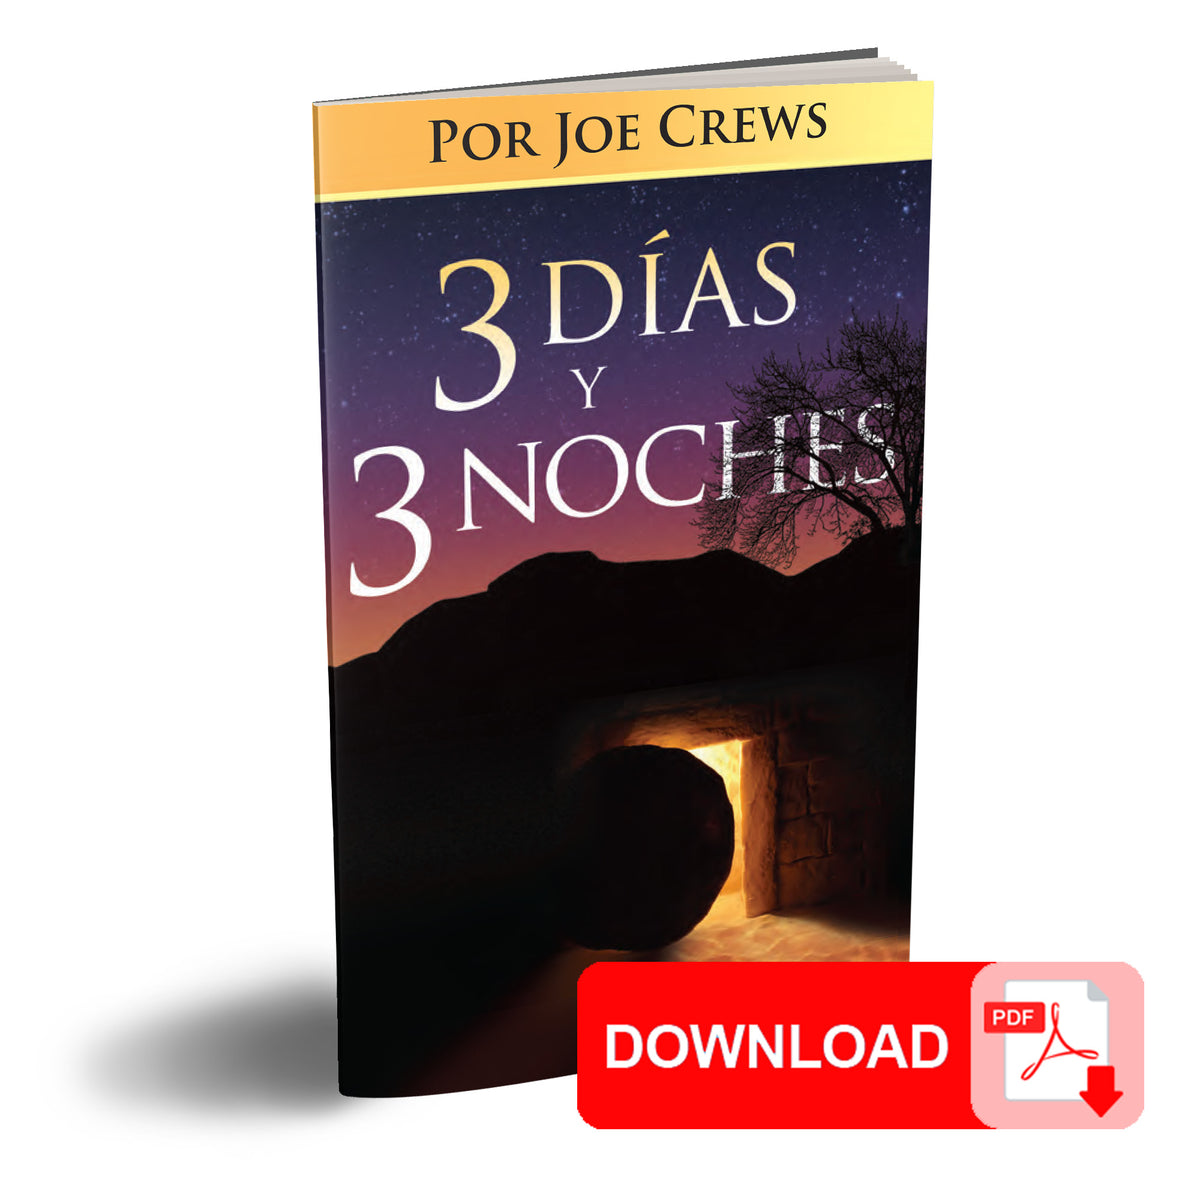 (PDF Download) 3 Dias y 3 Noches por Joe Crews (3 Days and 3 Nights Spanish)